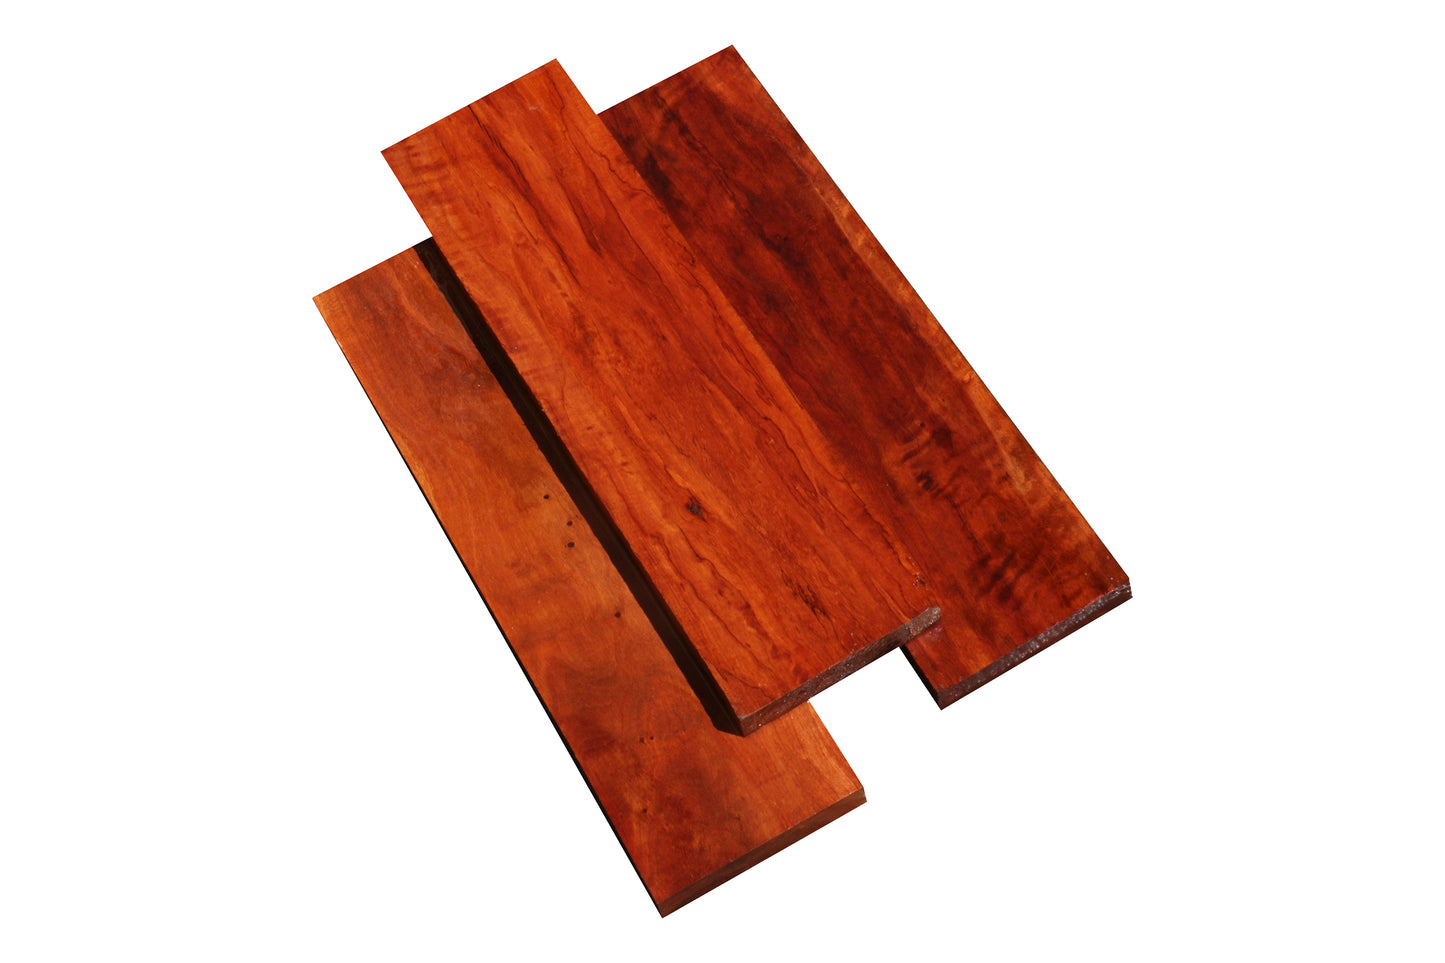 Rambutan Lumber (18" x 3" x 1/4")